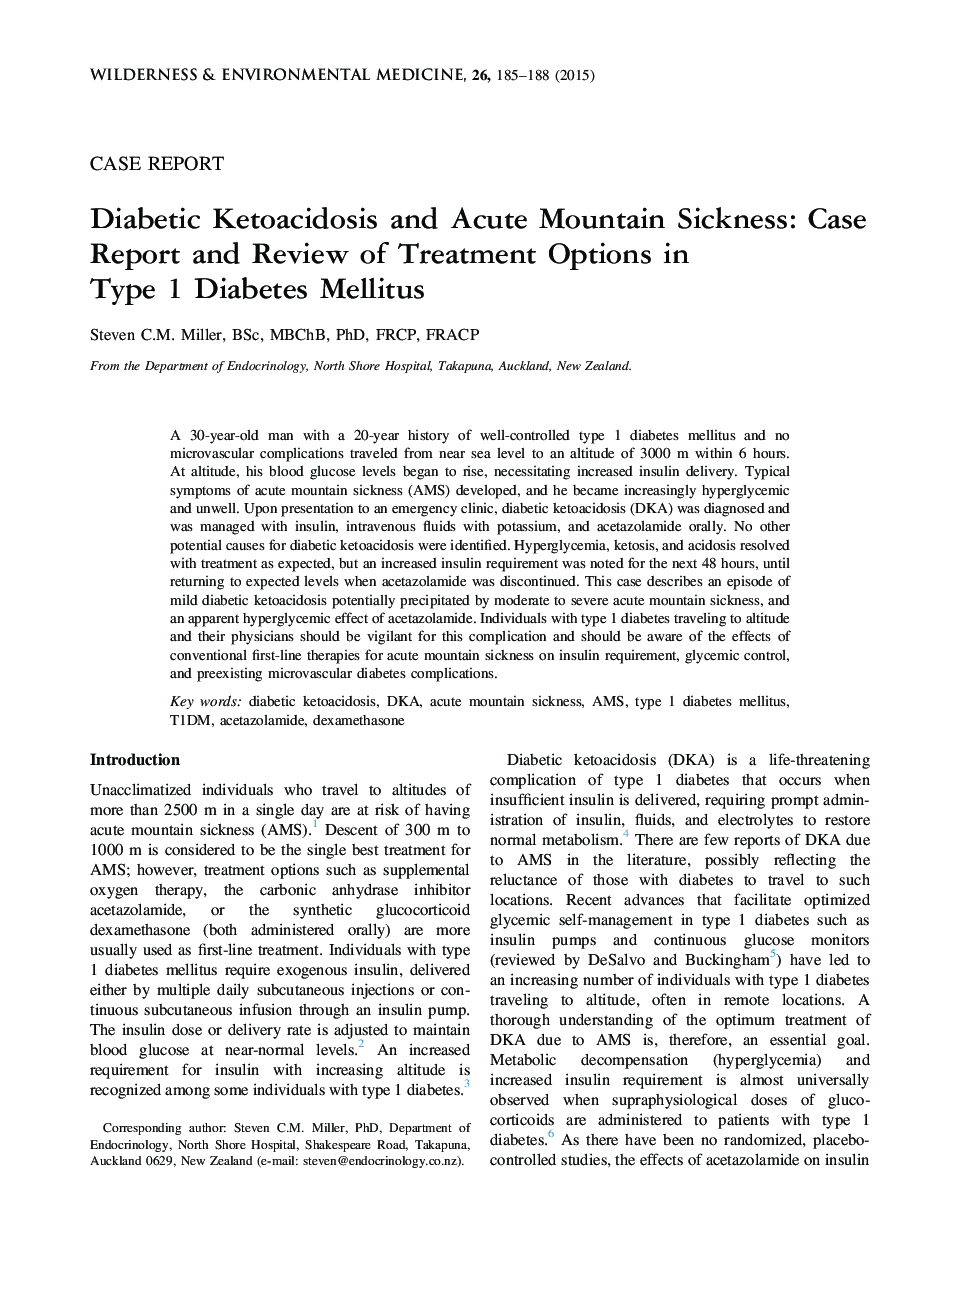 کتواسیدوز دیابتی و بیماری حاد کوهستان: گزارش موردی و مرور گزینه های درمان در دیابت نوع 1